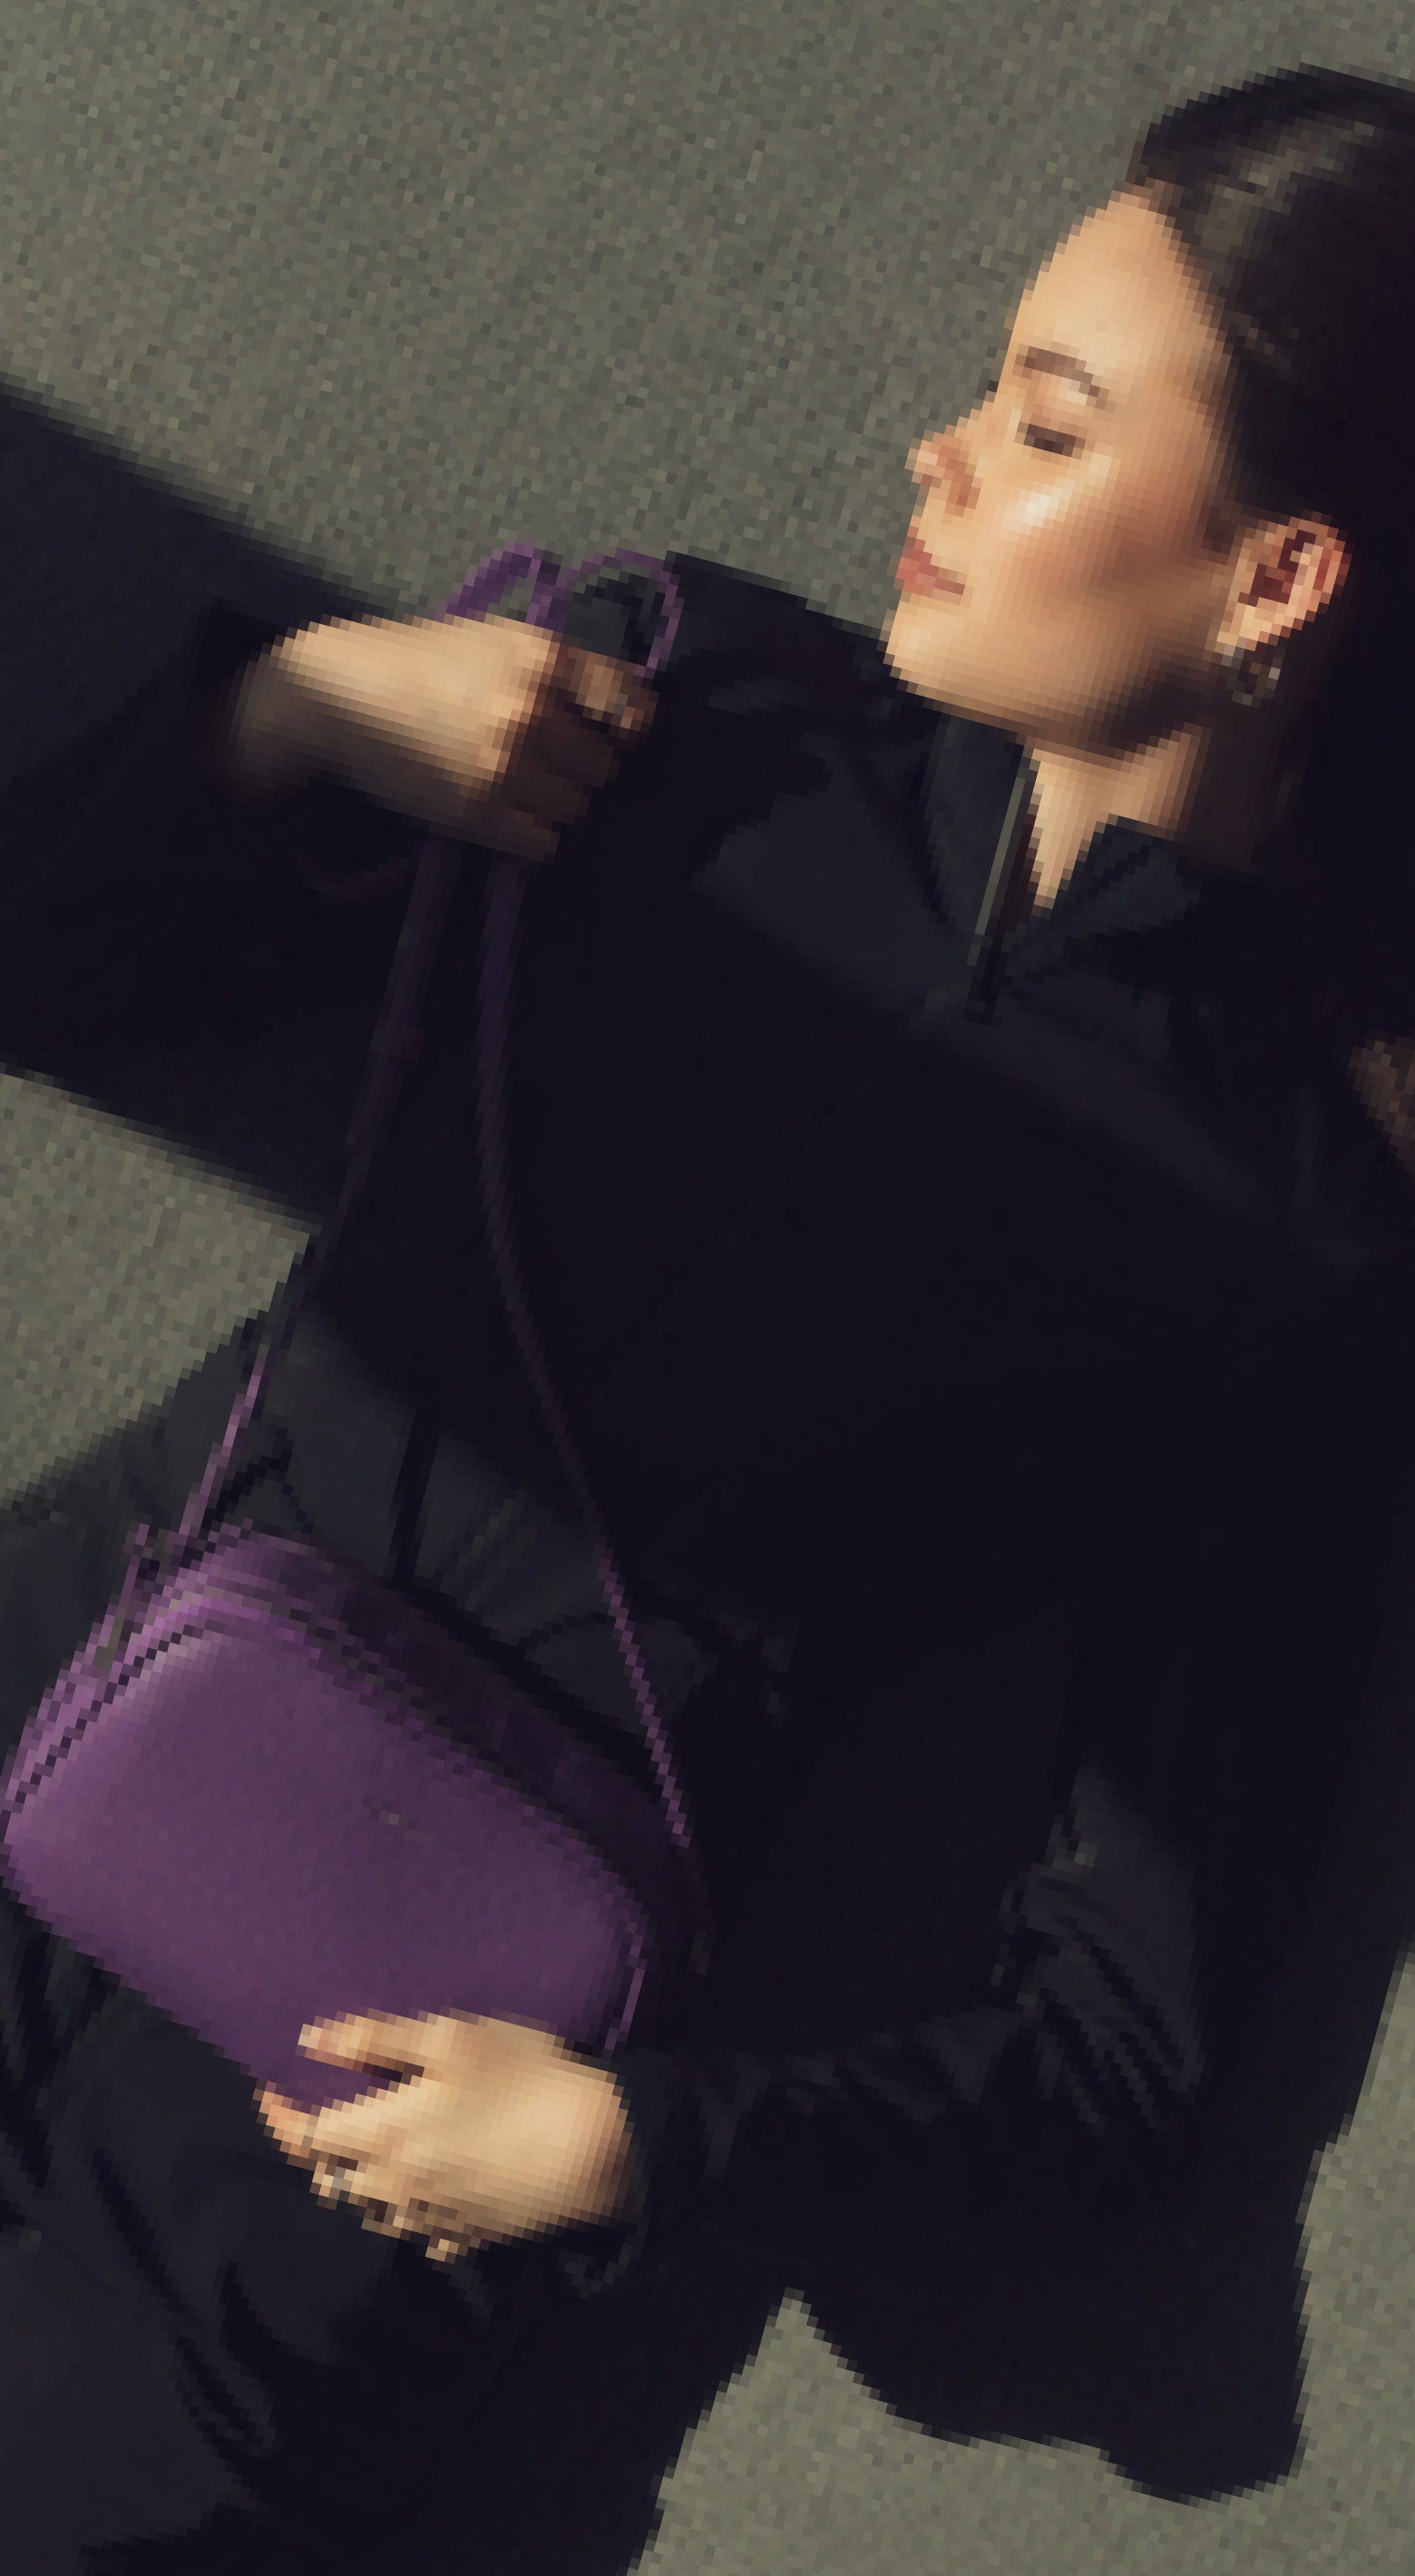 BROMEN Purses for Women Vegan Leather Hobo Bags Designer Handbags Large  Shoulder Crossbody Bag with Adjustable Strap